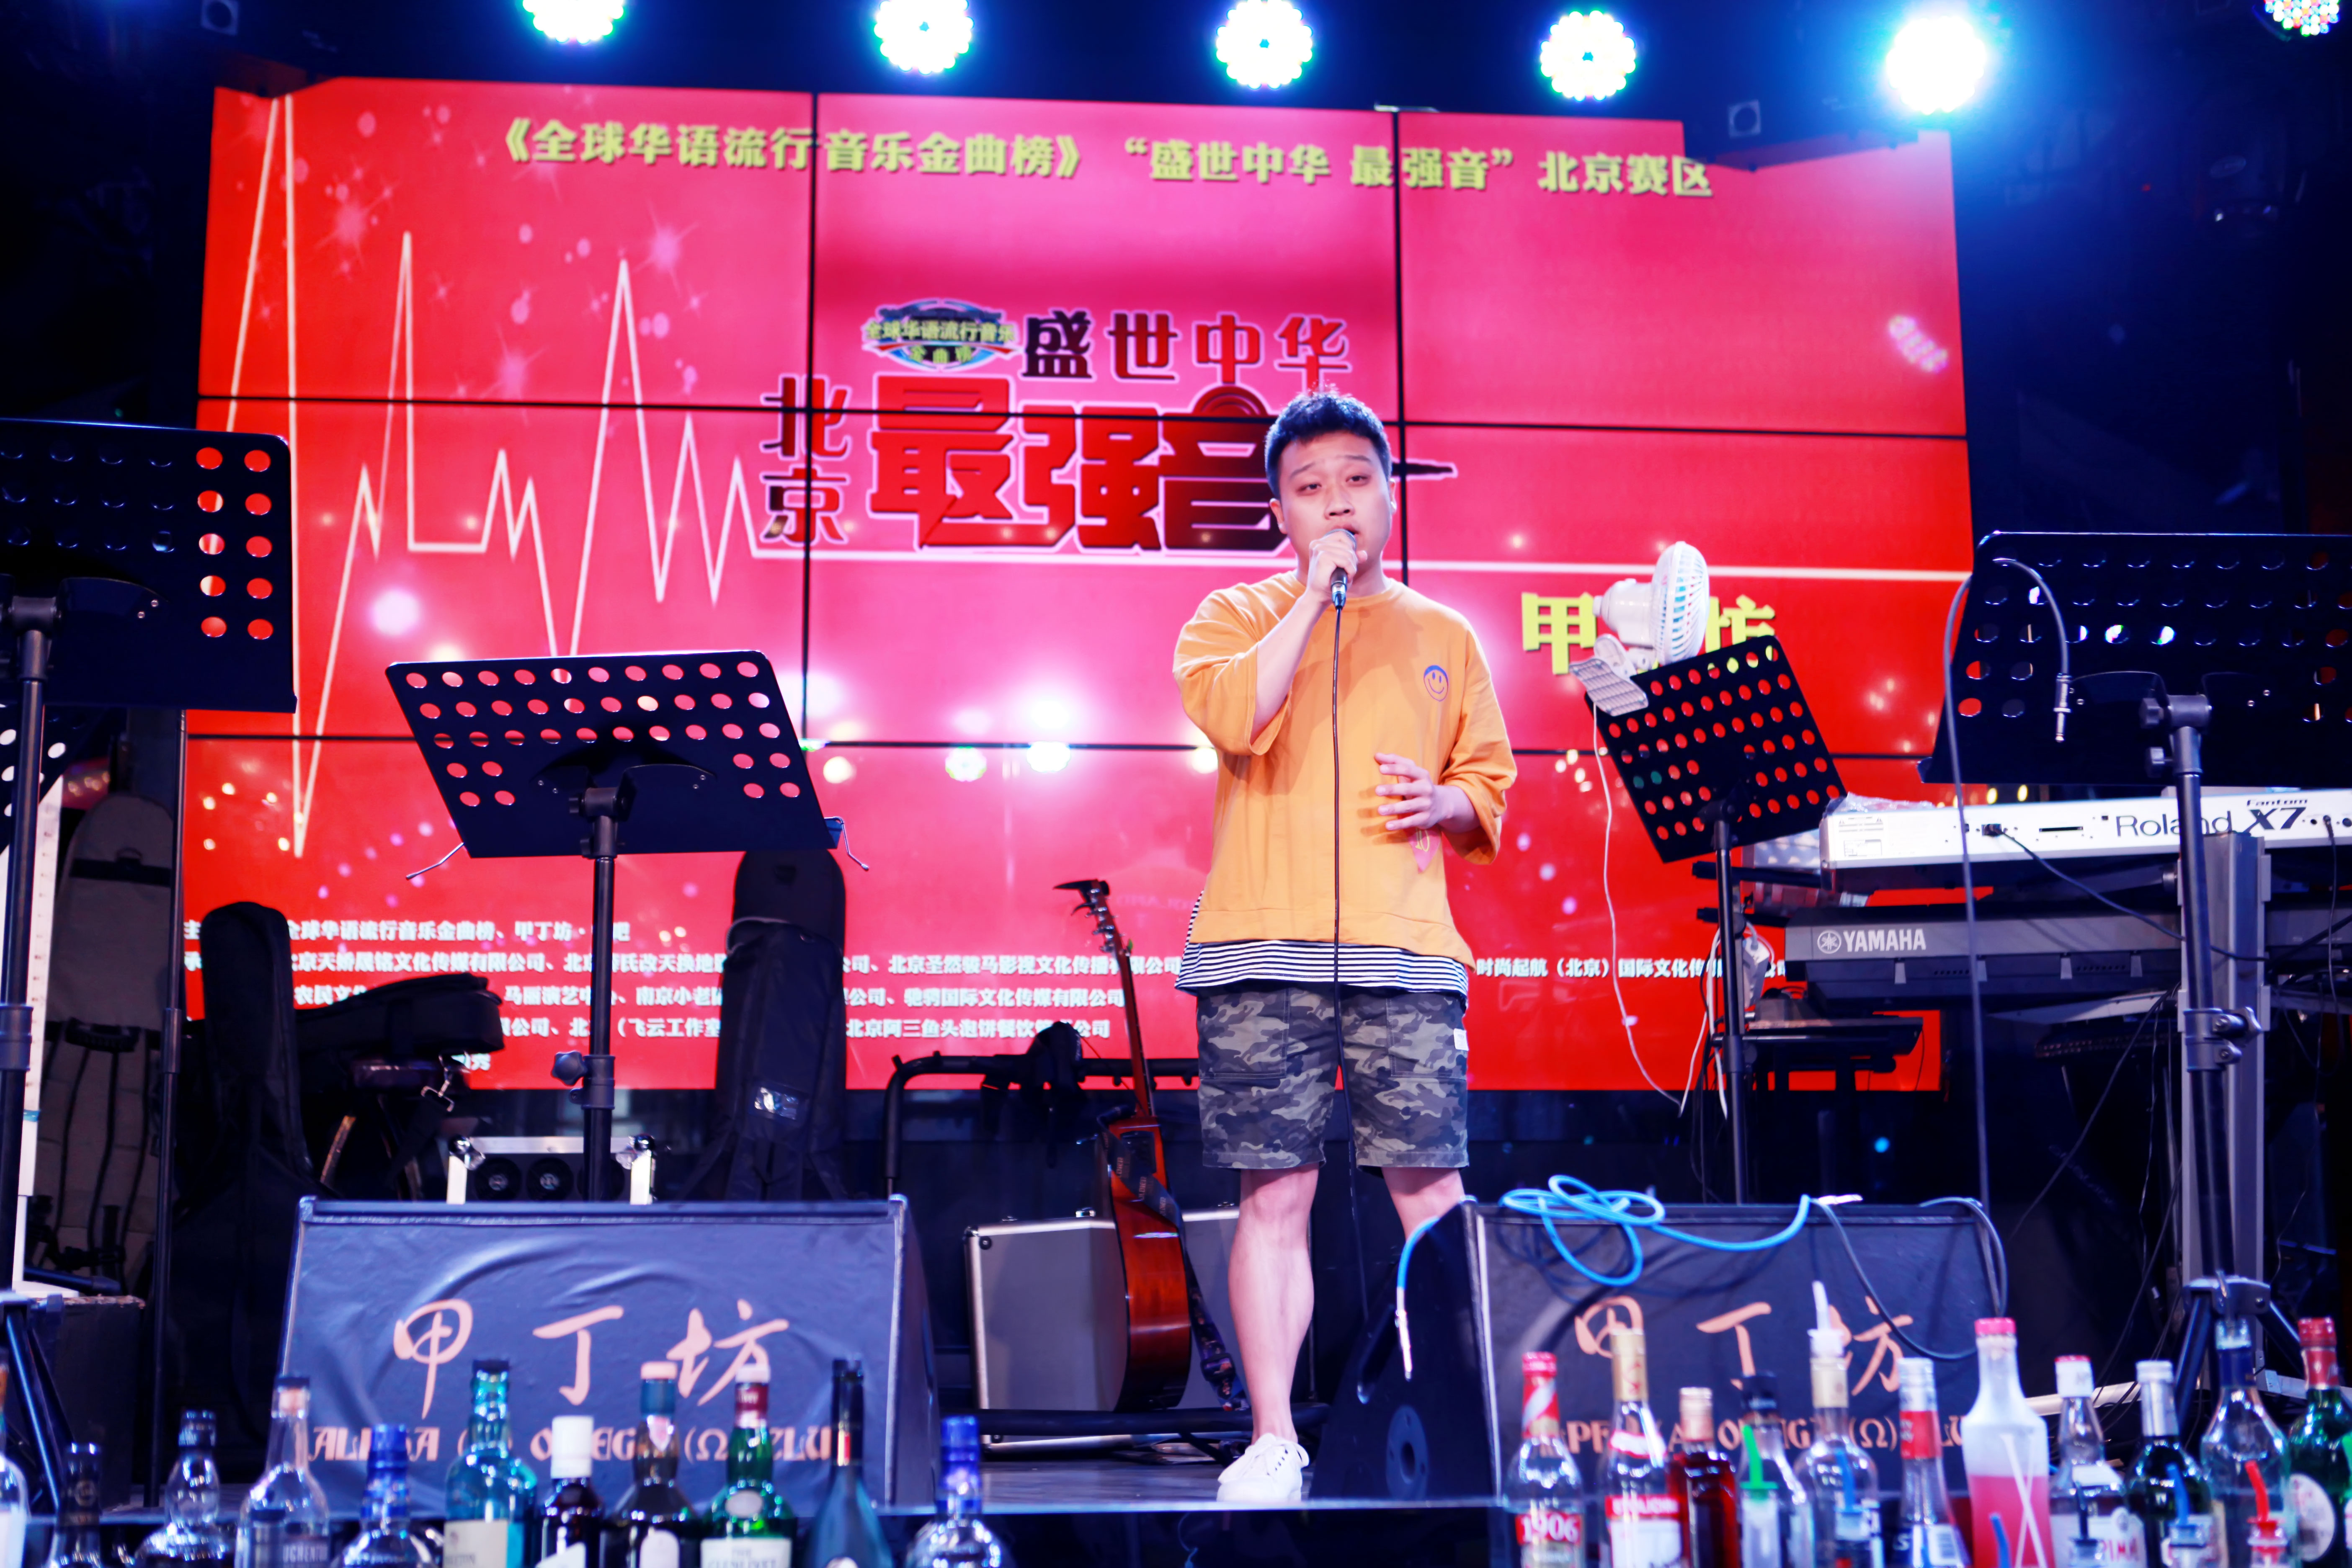 其宗旨是:全世界最具指标性的华语流行音乐奖项就是"全球华语歌曲